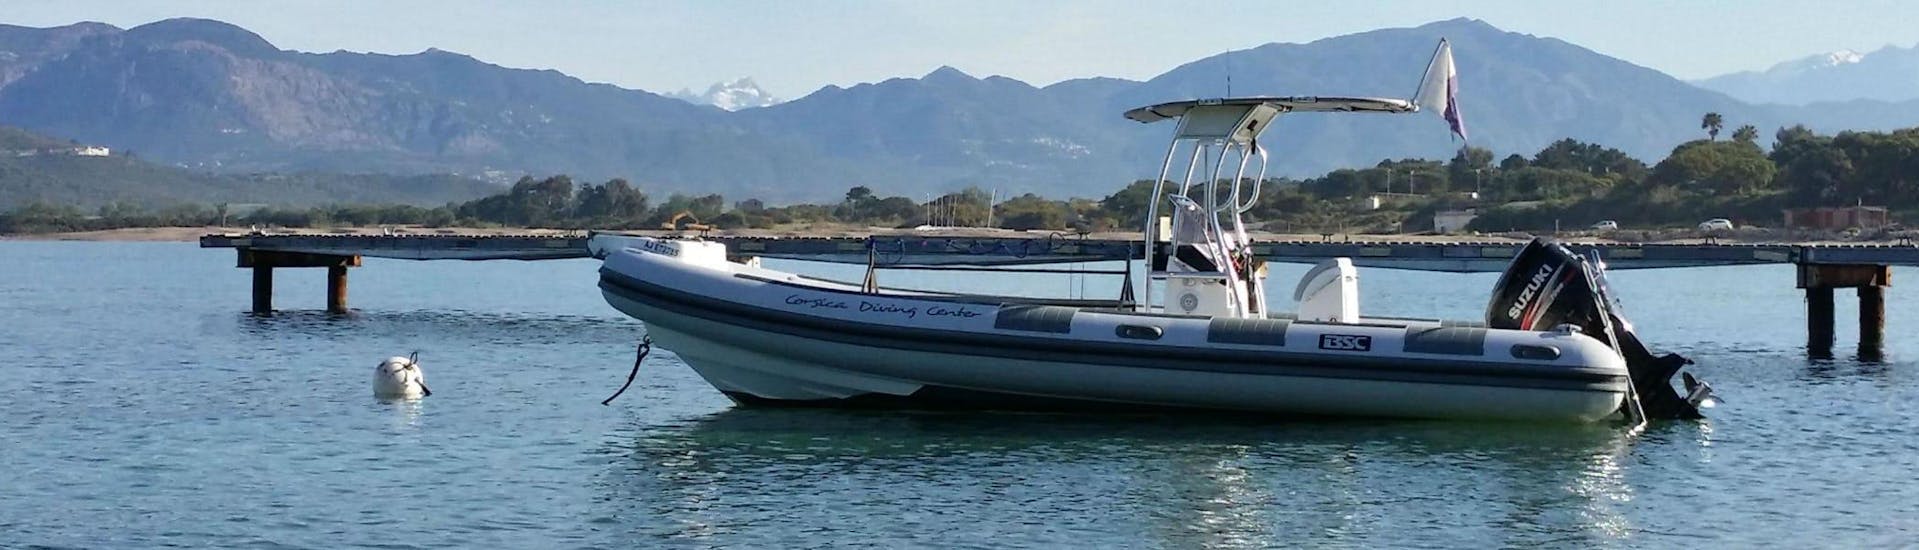 Photo du bateau utilisé pendant le Cours PE12 dans le Golfe d'Ajaccio pour Débutants avec Maeva Plongée.